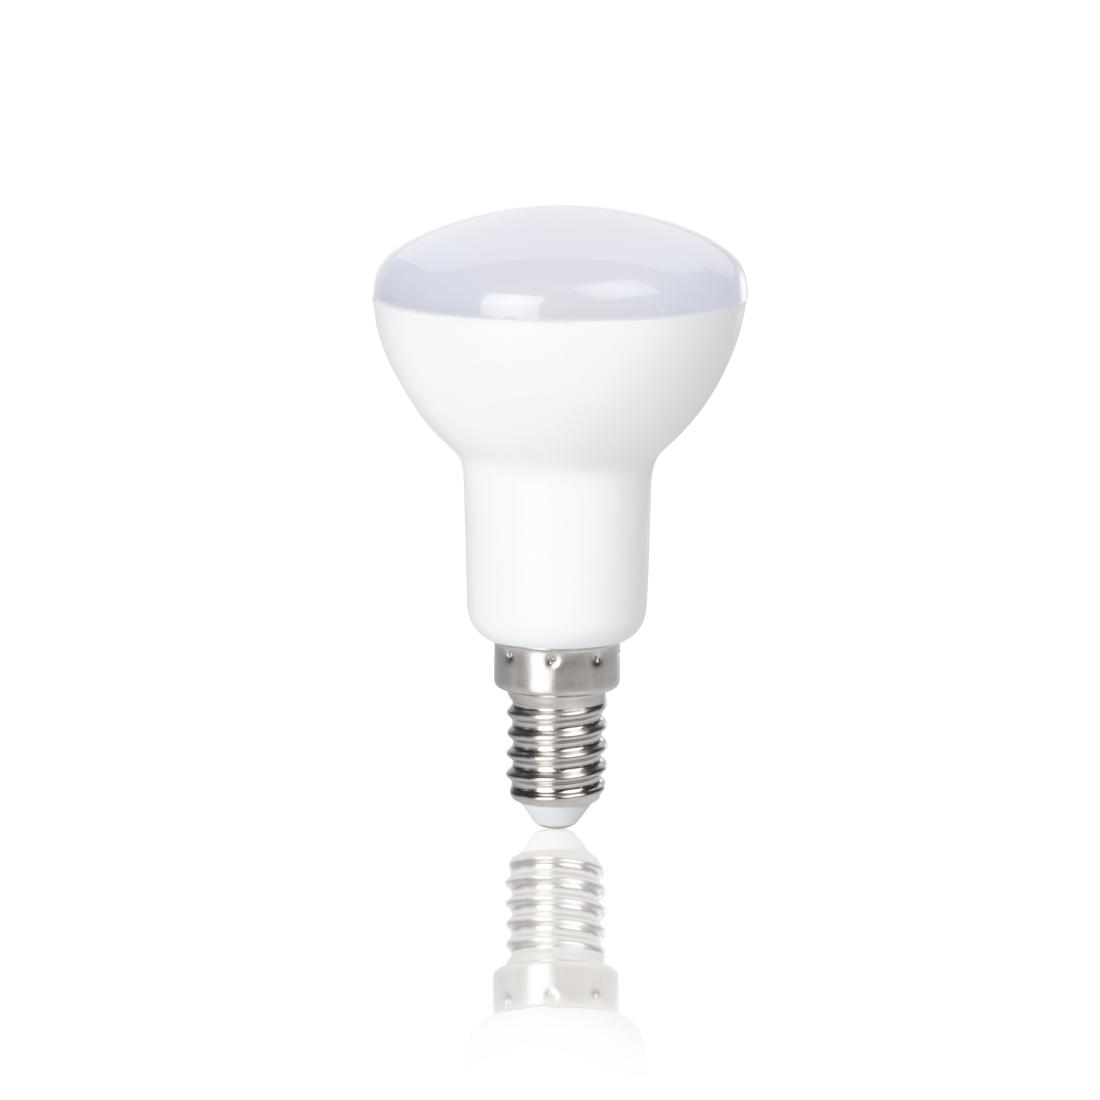 abx2 Druckfähige Abbildung 2 - Xavax, LED-Lampe, E14, 470lm ersetzt 40W, Reflektorlampe R50, Warmweiß, 2 Stück